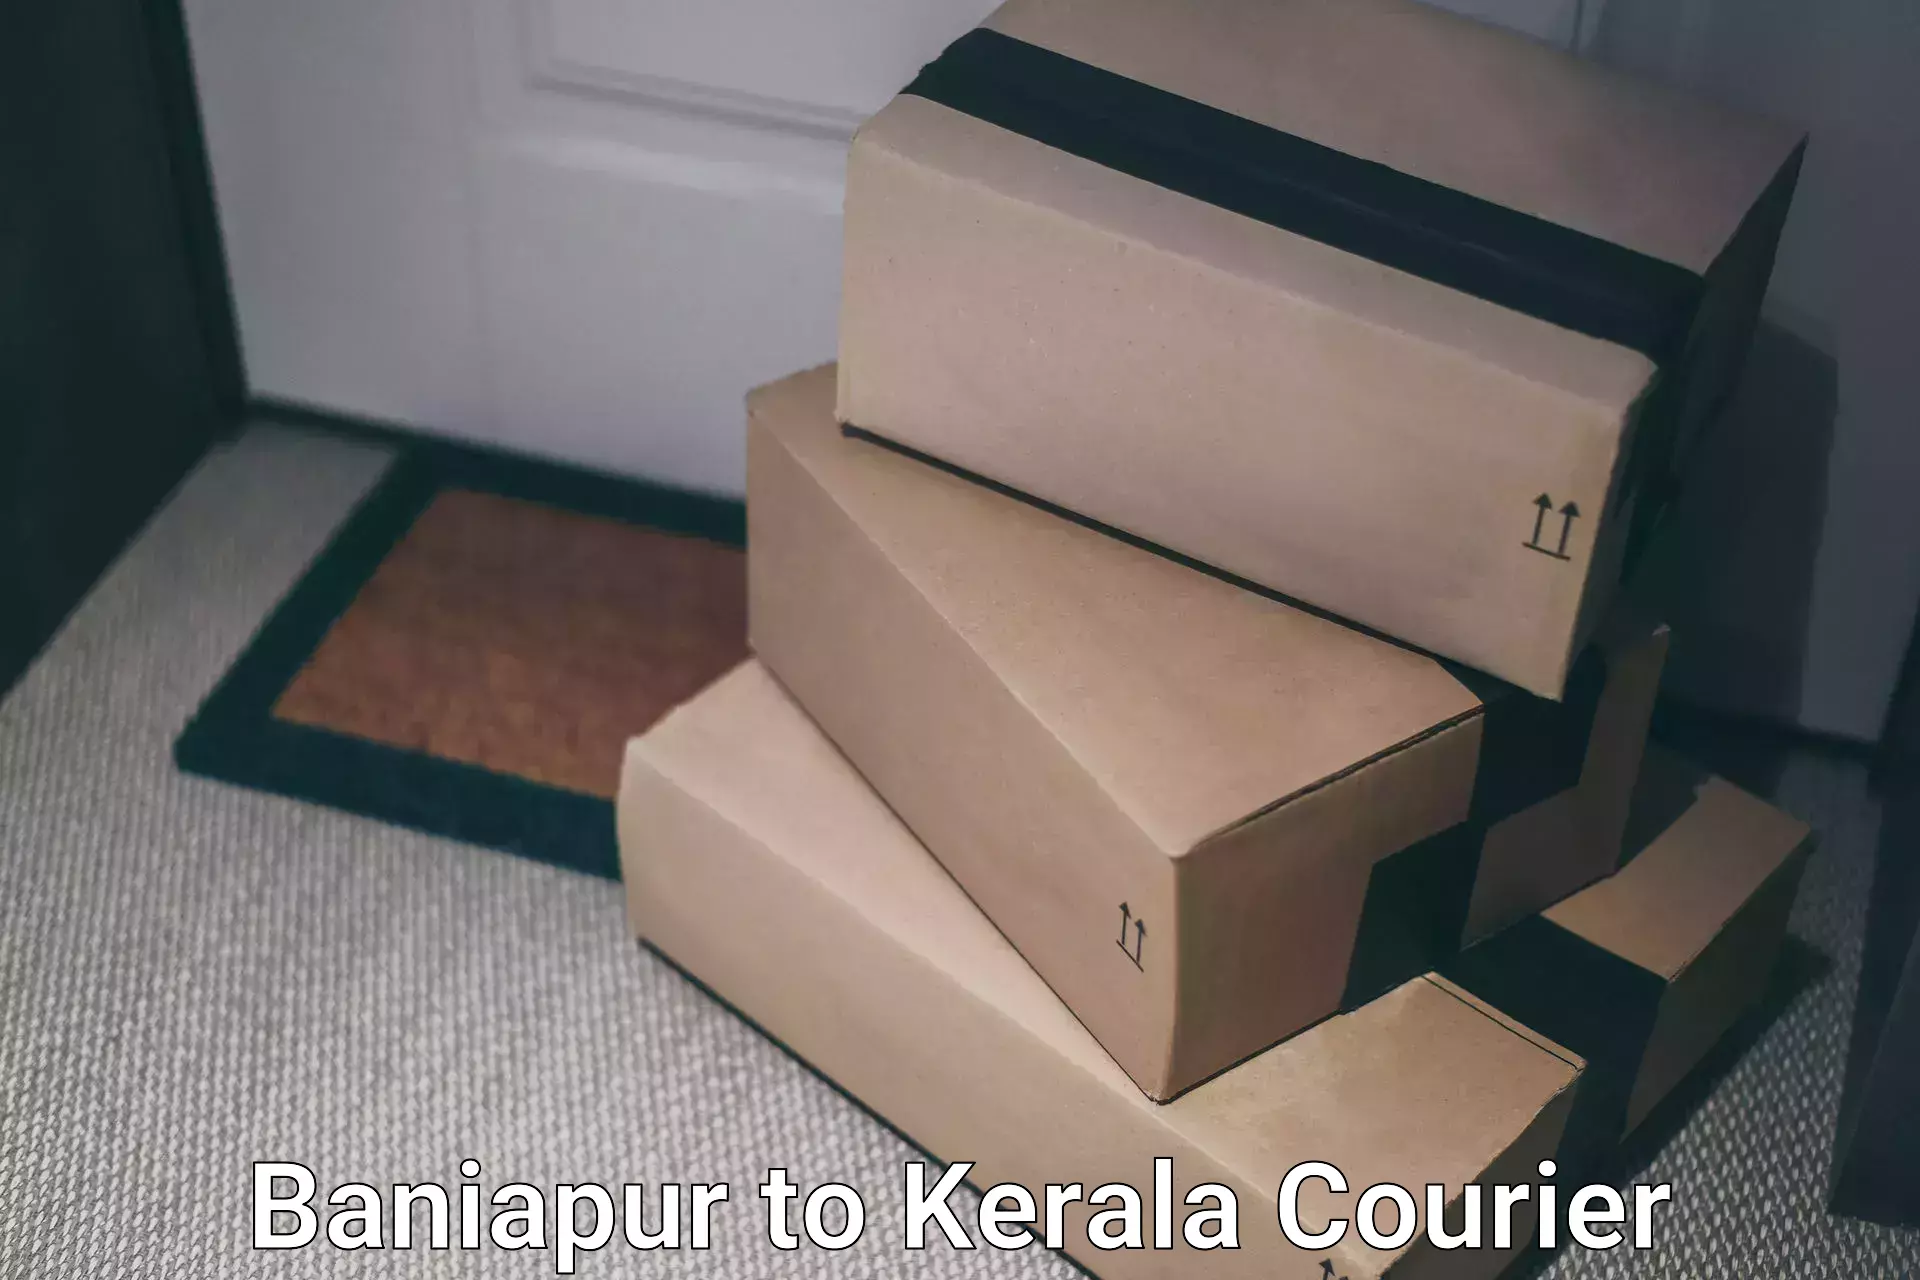 Efficient logistics management Baniapur to Kakkur